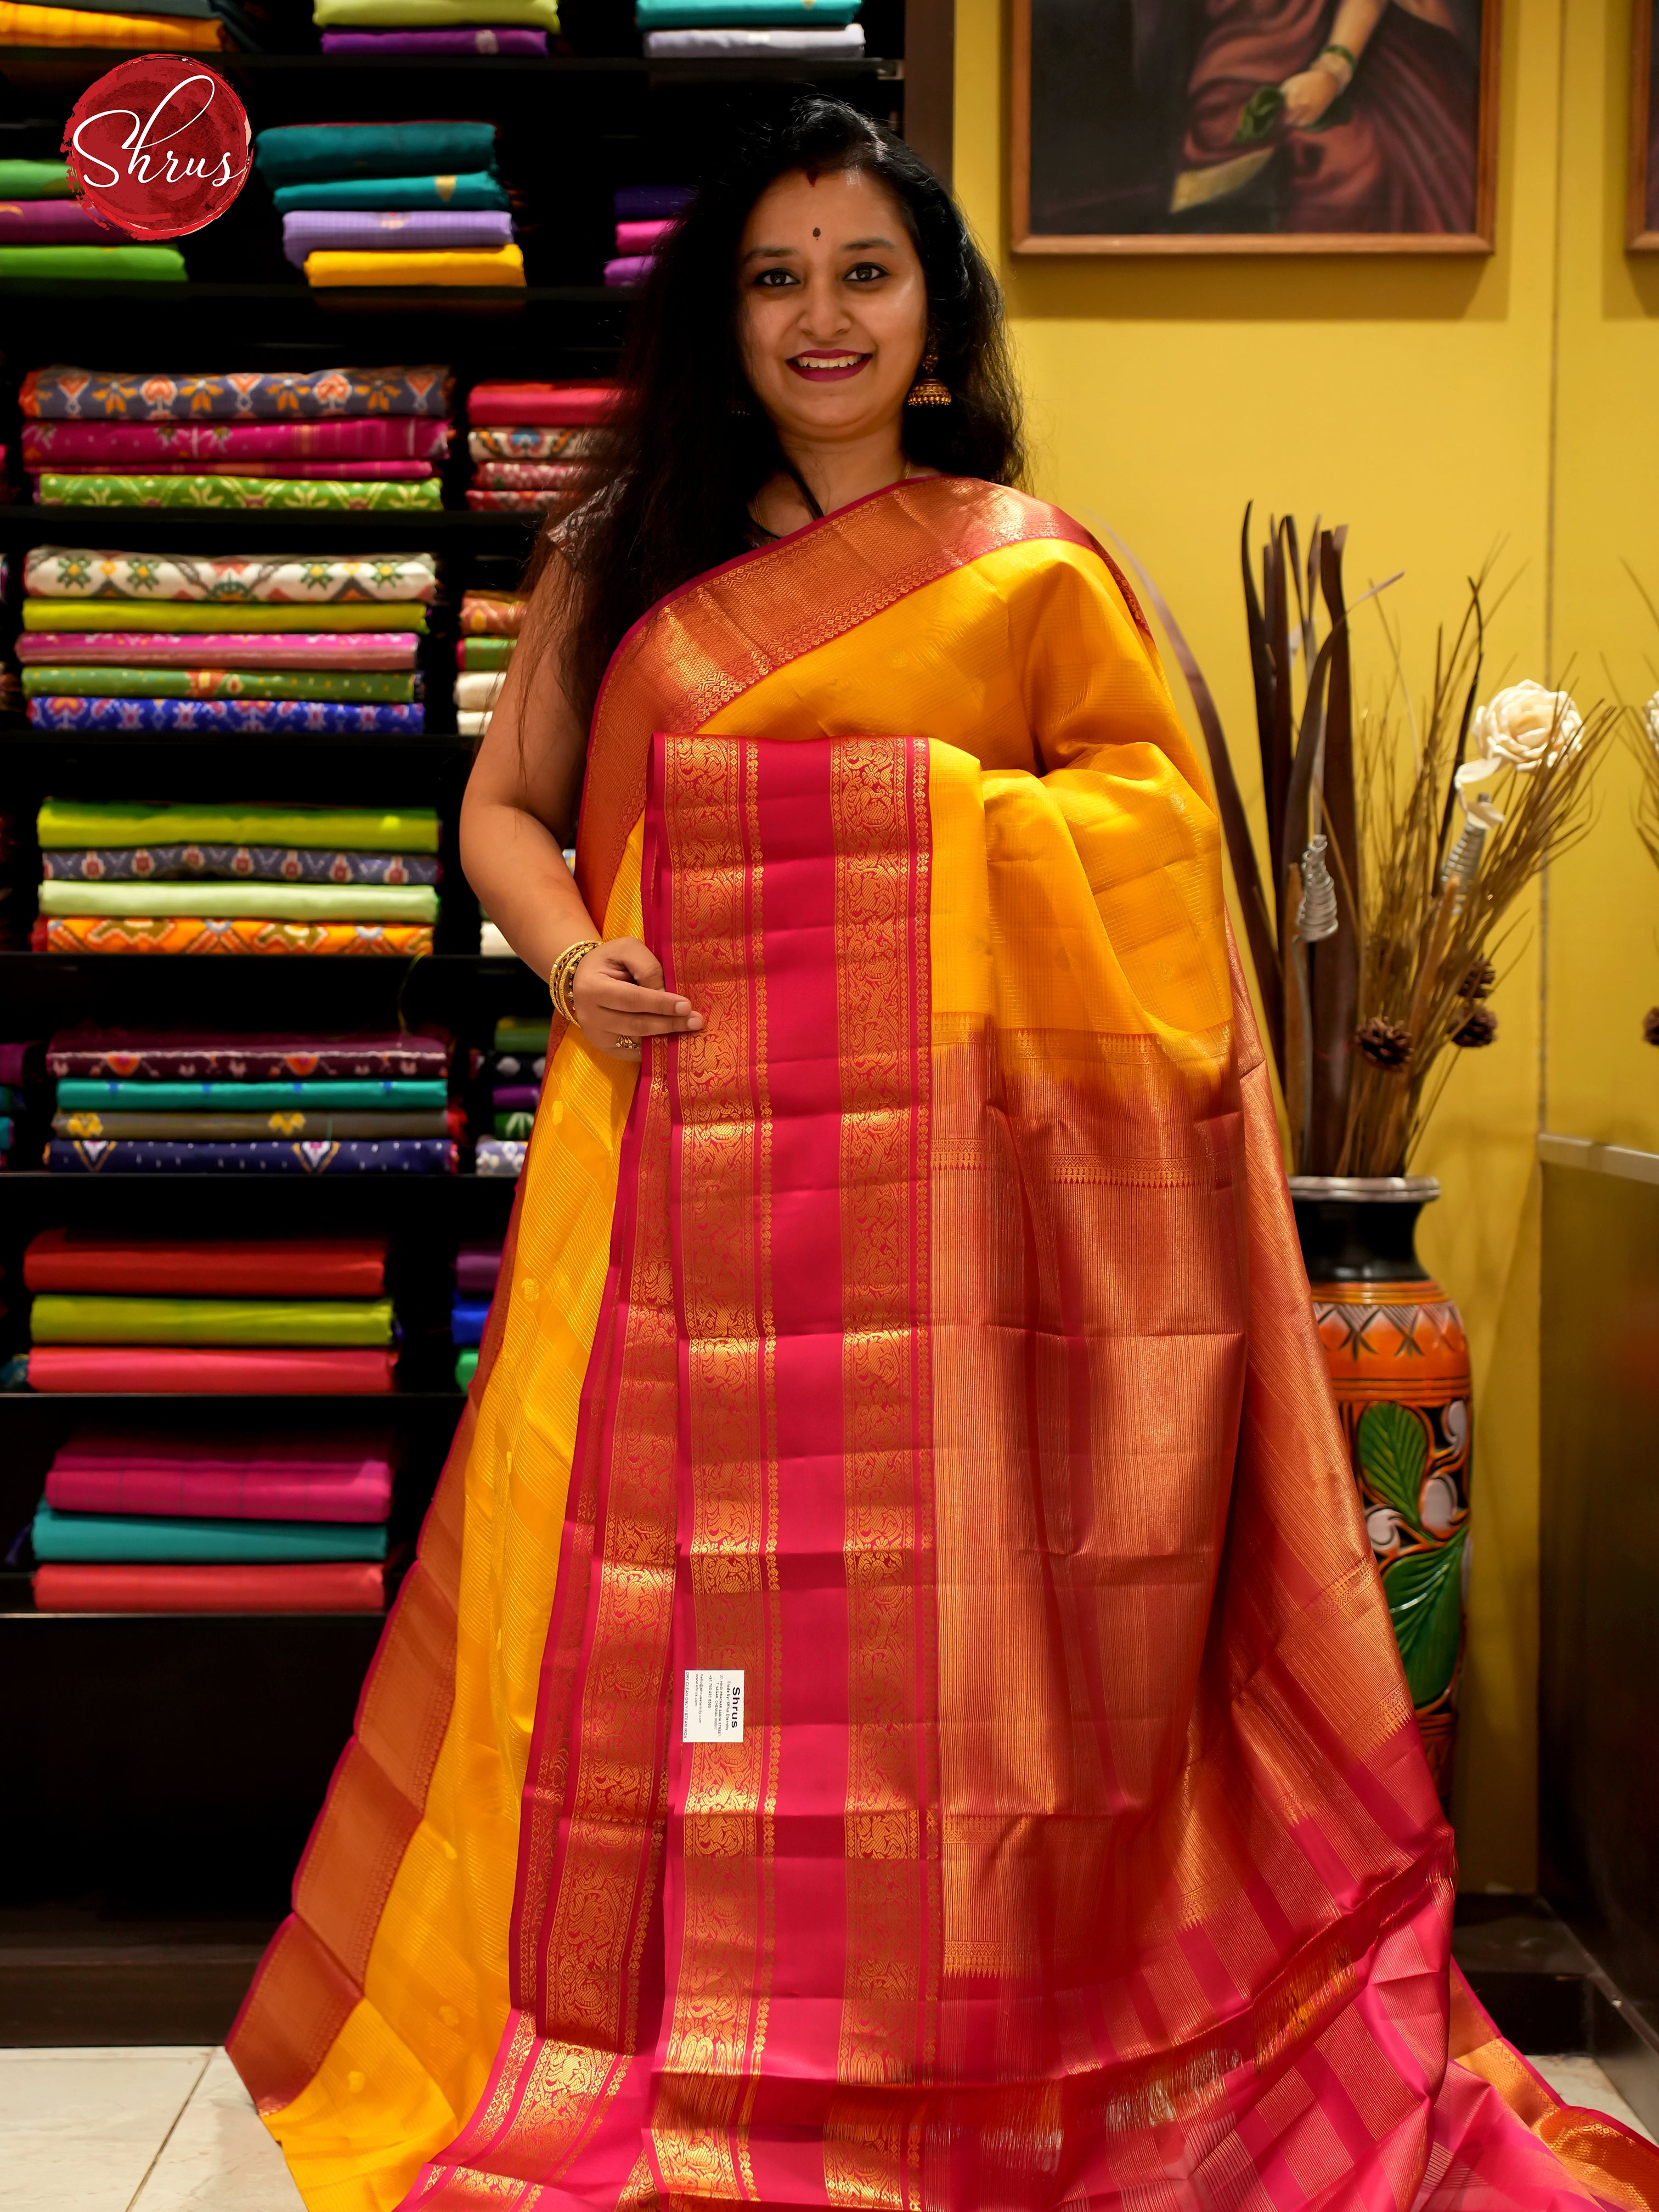 CDS24030 - Kanchipuram silk - Shop on ShrusEternity.com